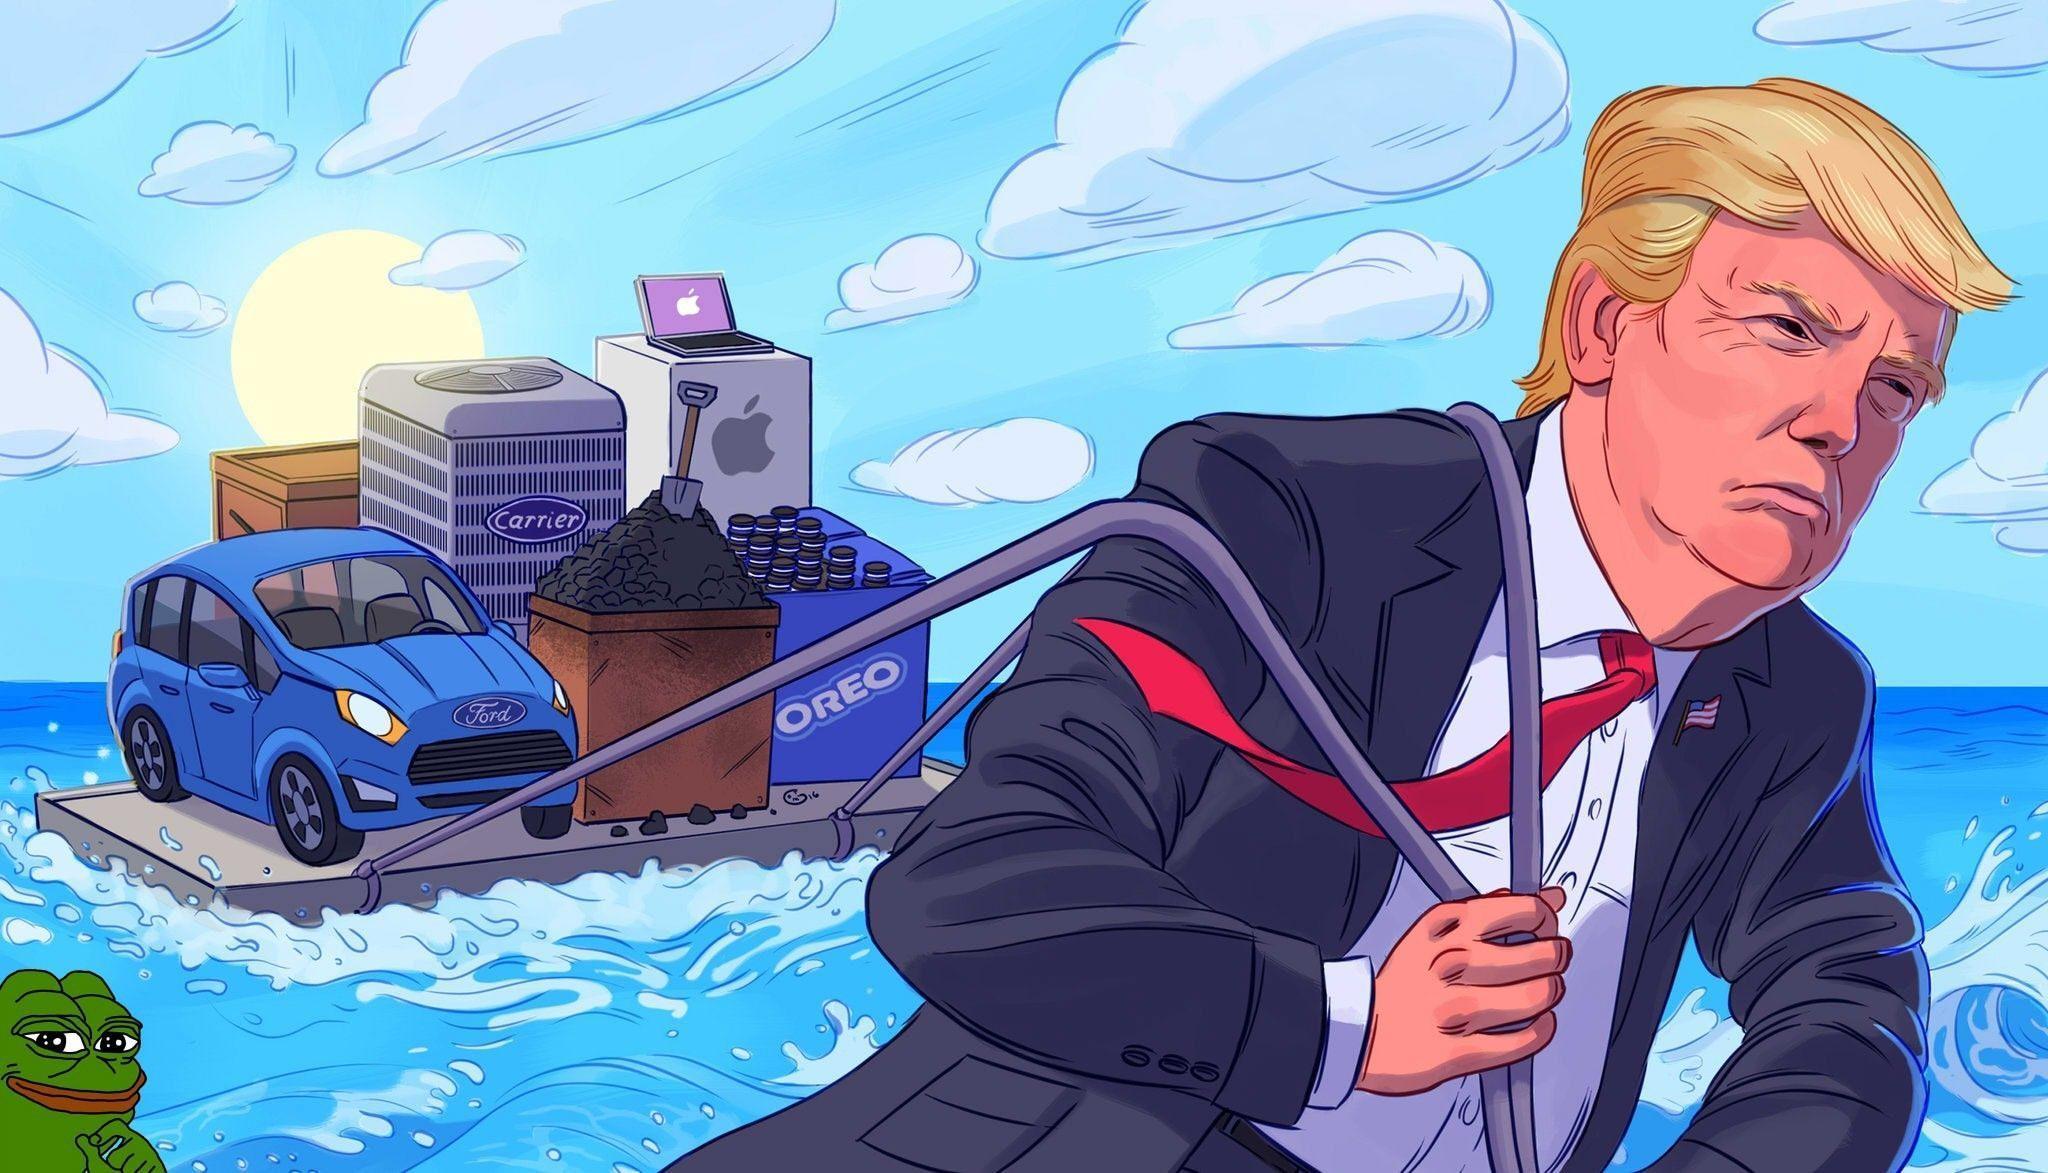 Donald Trump HD Wallpaper